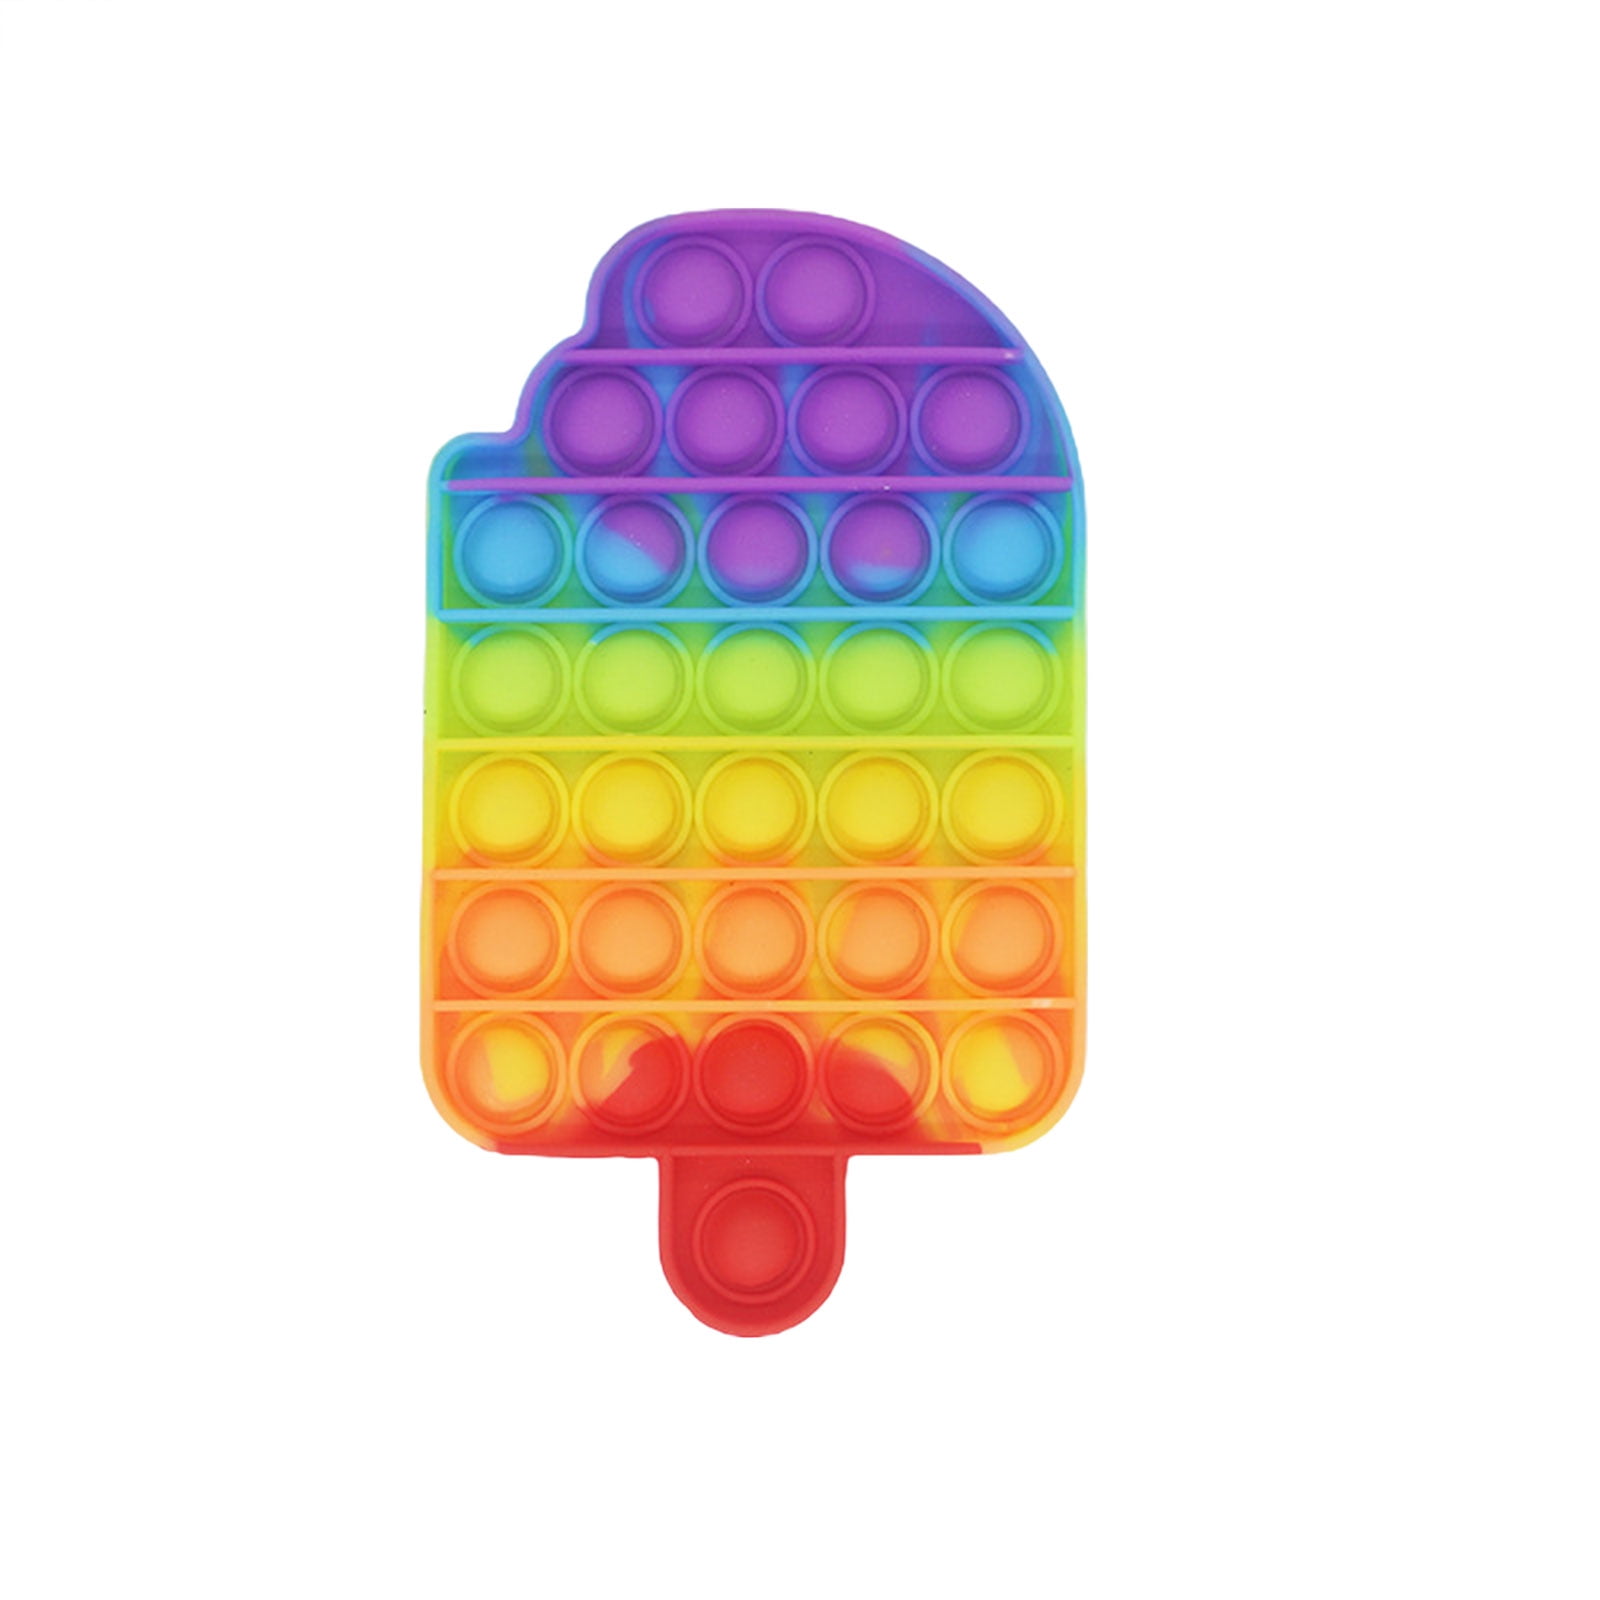 Details about   Push Pop Bubble Fidget Sensory Toy,Autism Silicone Stress Relief for  Kids 